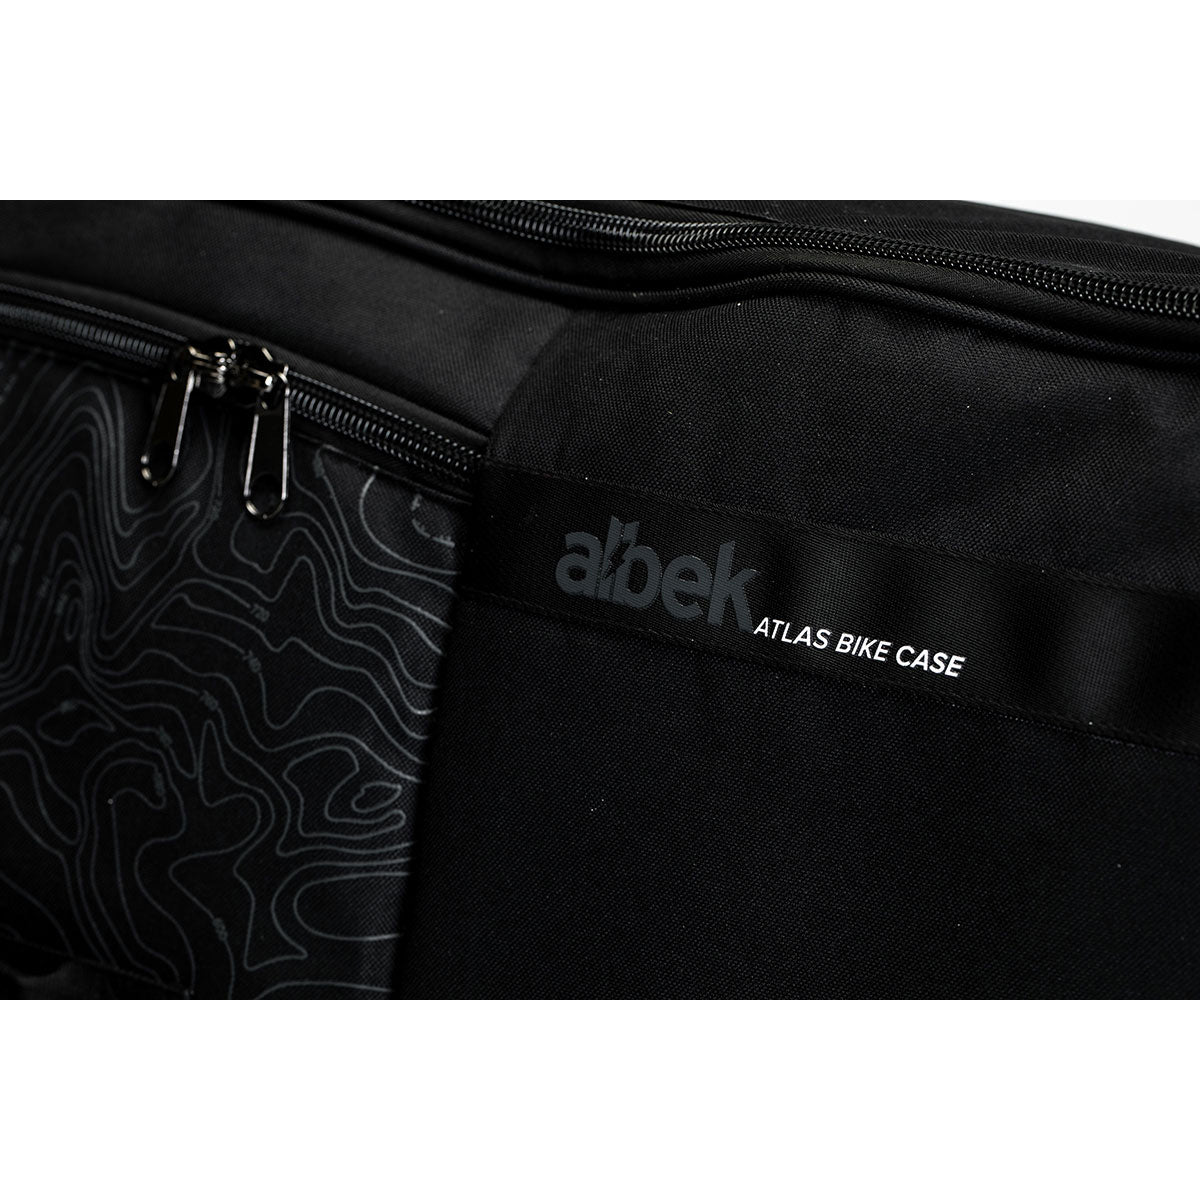 Albek Atlas Bike Bag - Covert Black